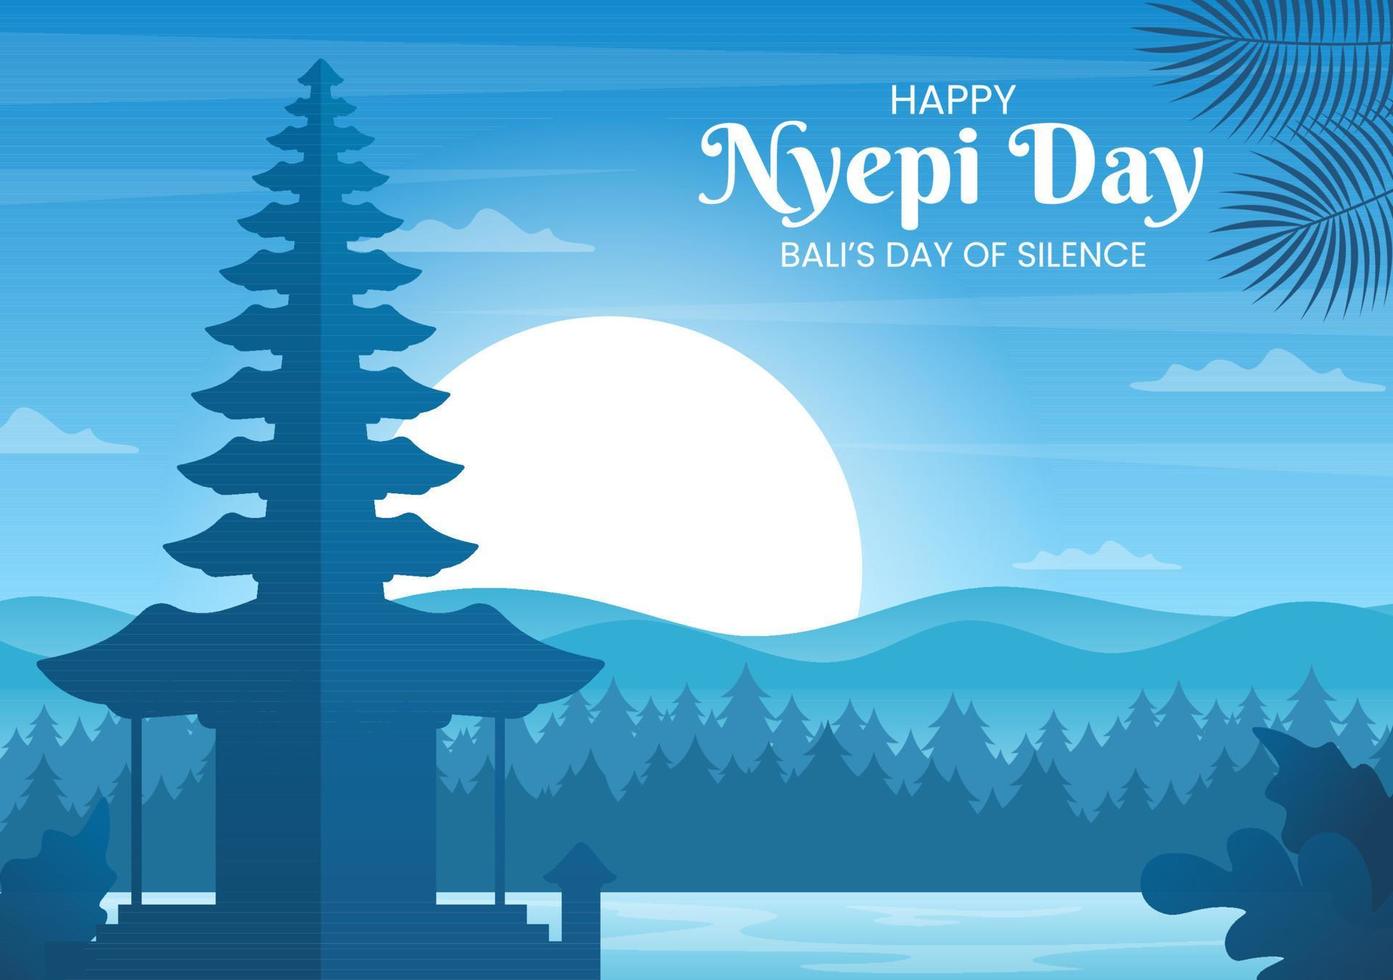 felice giorno di nyepi o silenzio di bali alle cerimonie indù sullo sfondo del tempio o illustrazione pura adatta per poster vettore